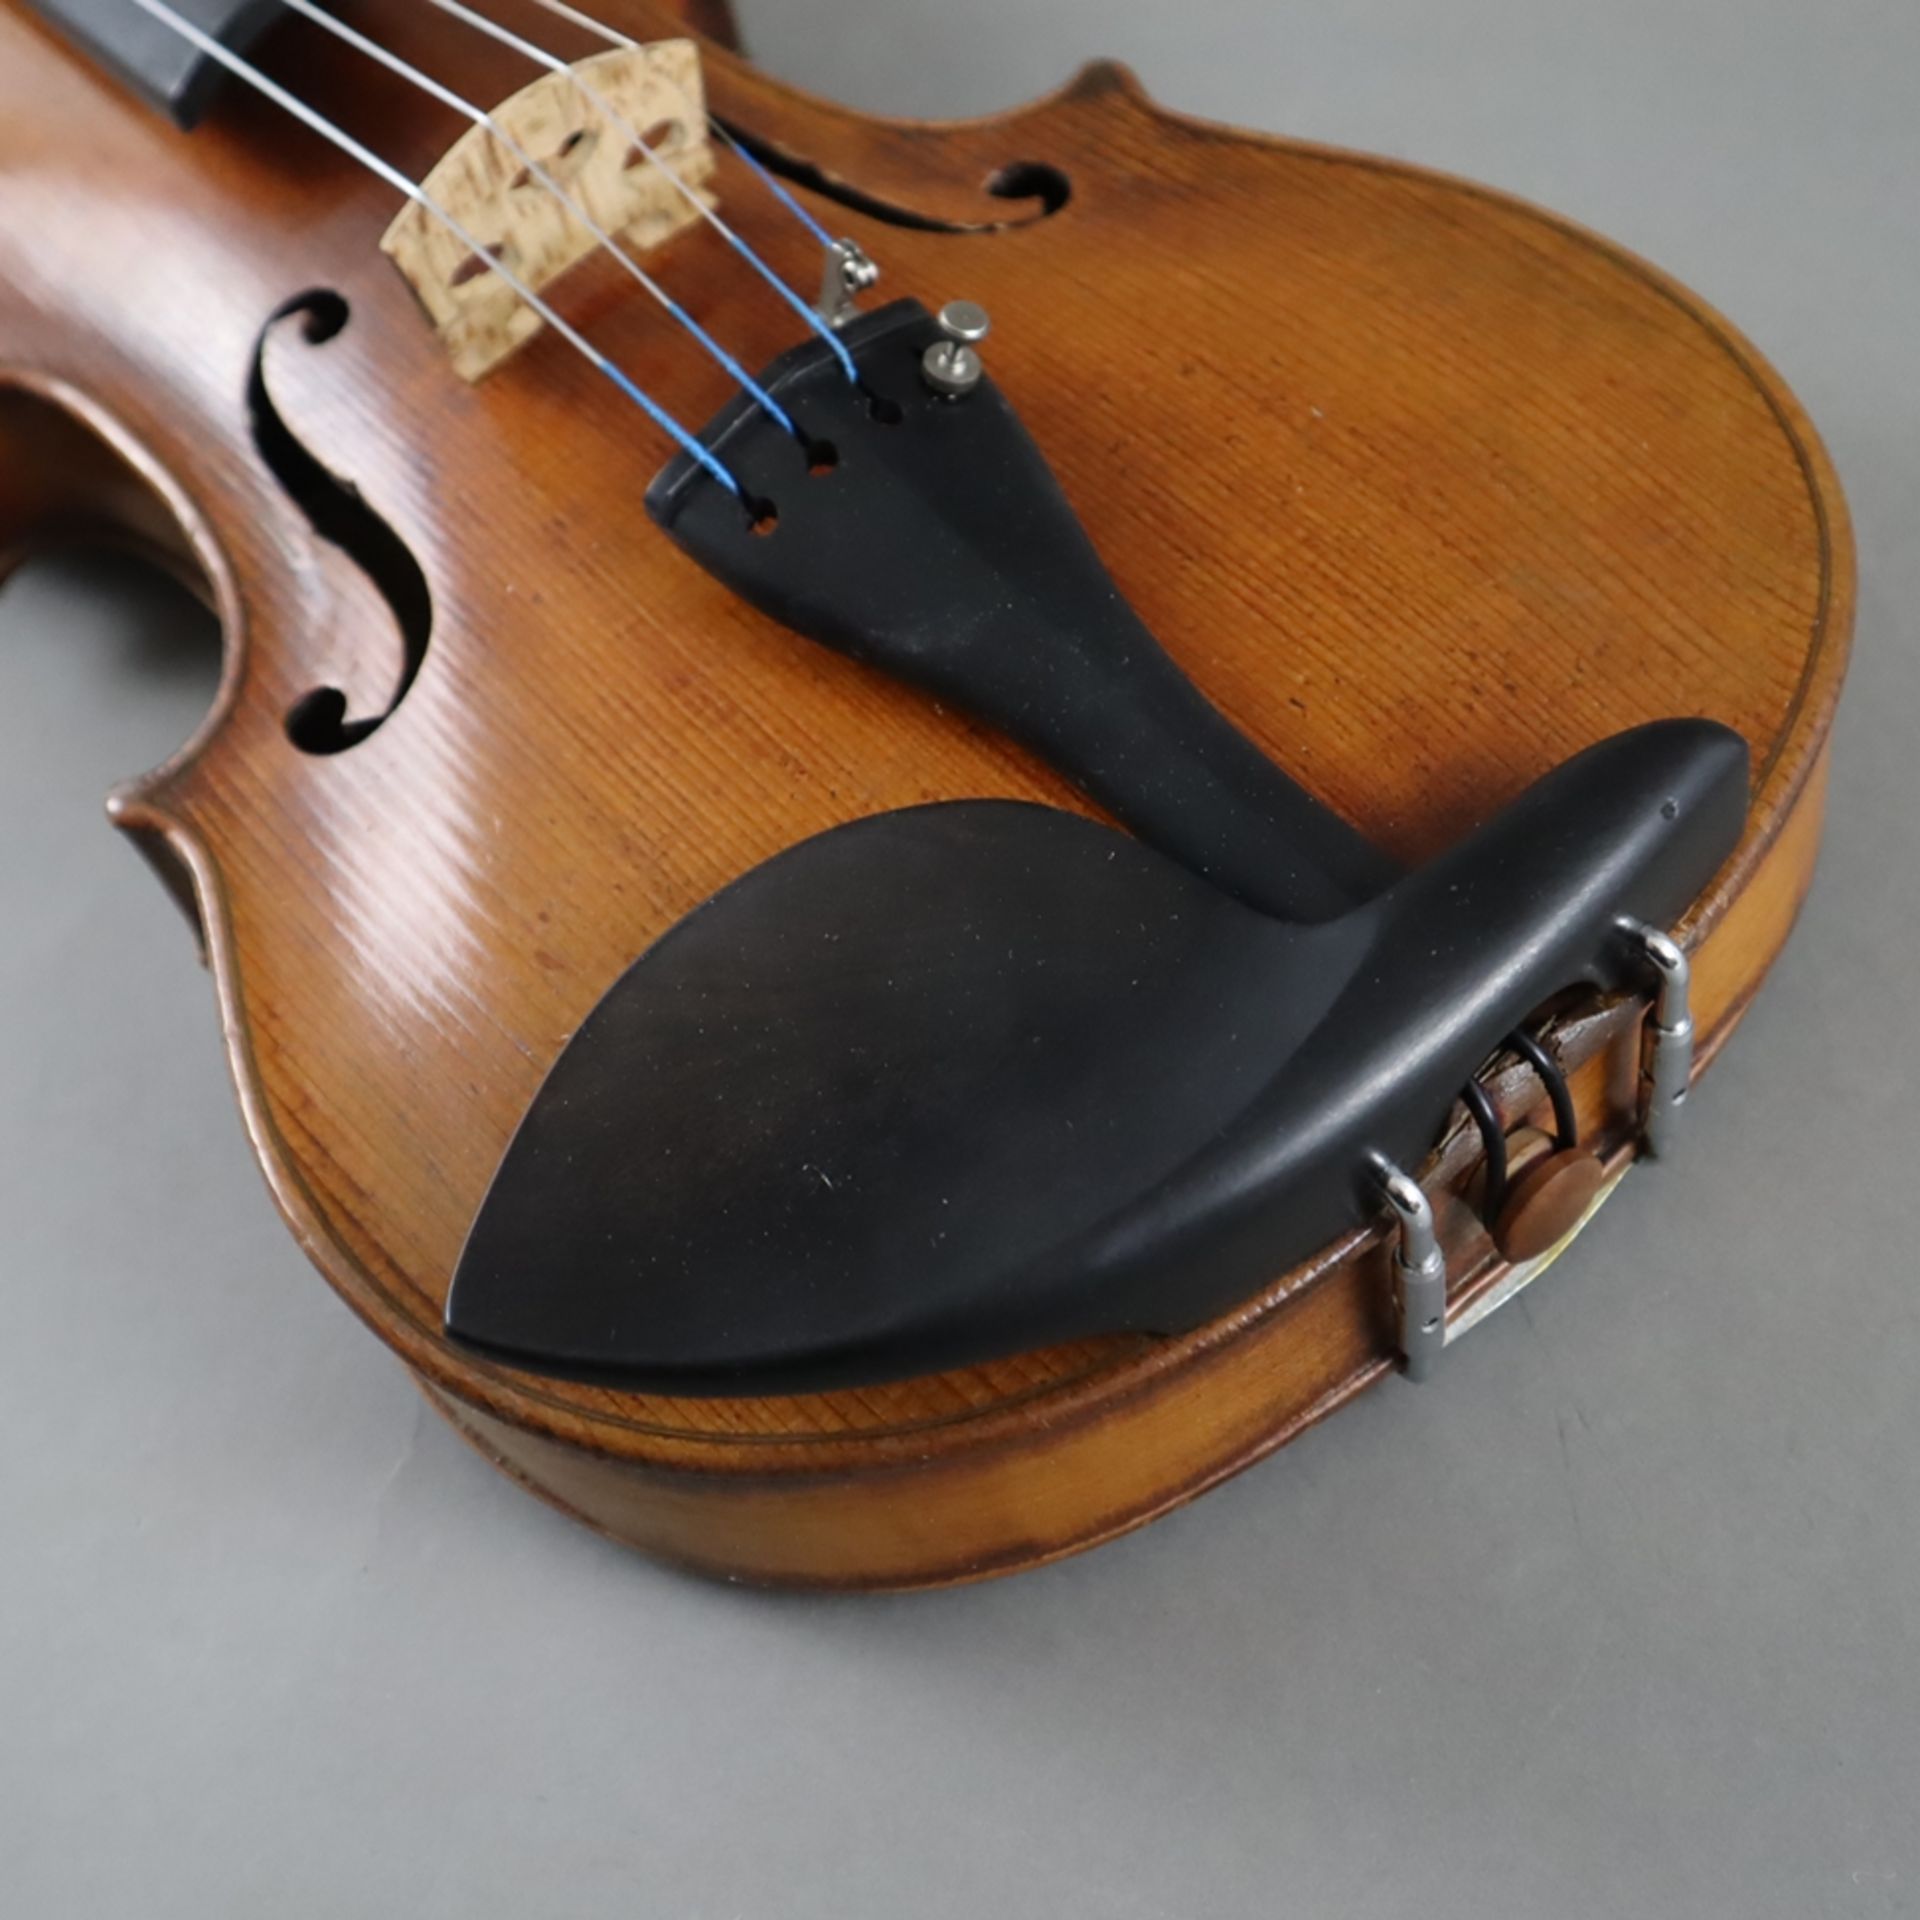 Schmale Geige - Italien, auf dem Faksimile-Etikett bezeichnet "Paolo Leonori / Roma 1949", einteili - Image 4 of 7